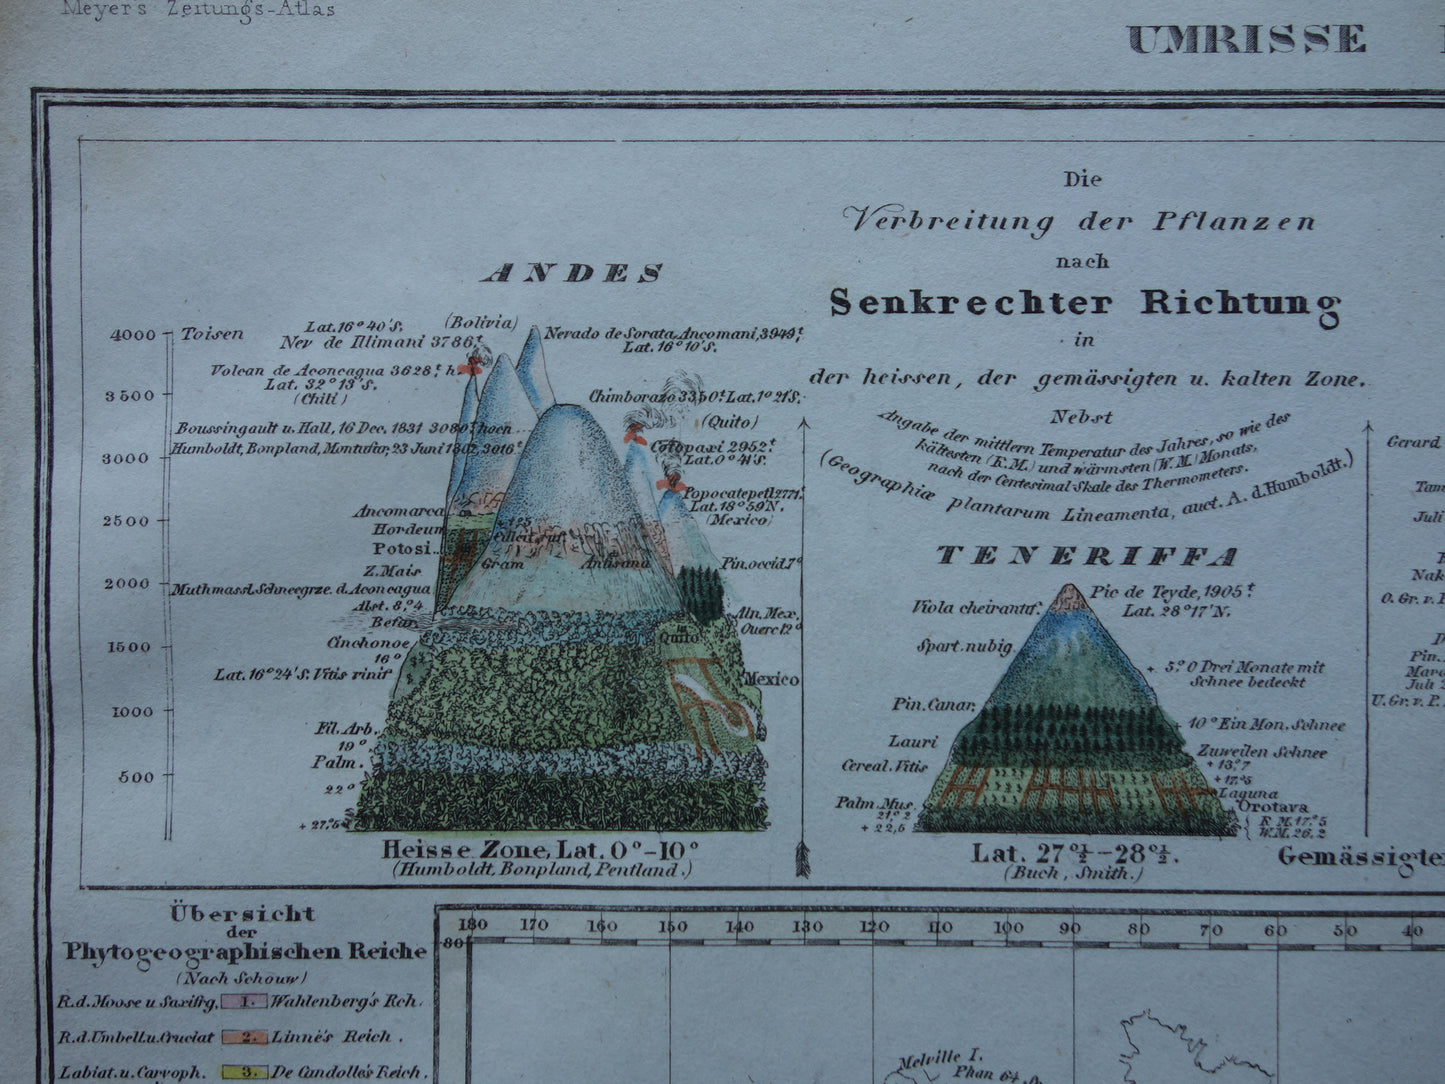 BOTANISCHE kaart van de wereld uit 1850 oude handgekleurde fytogeografie wereldkaart - bergtoppen Himalaya Alpen vintage print